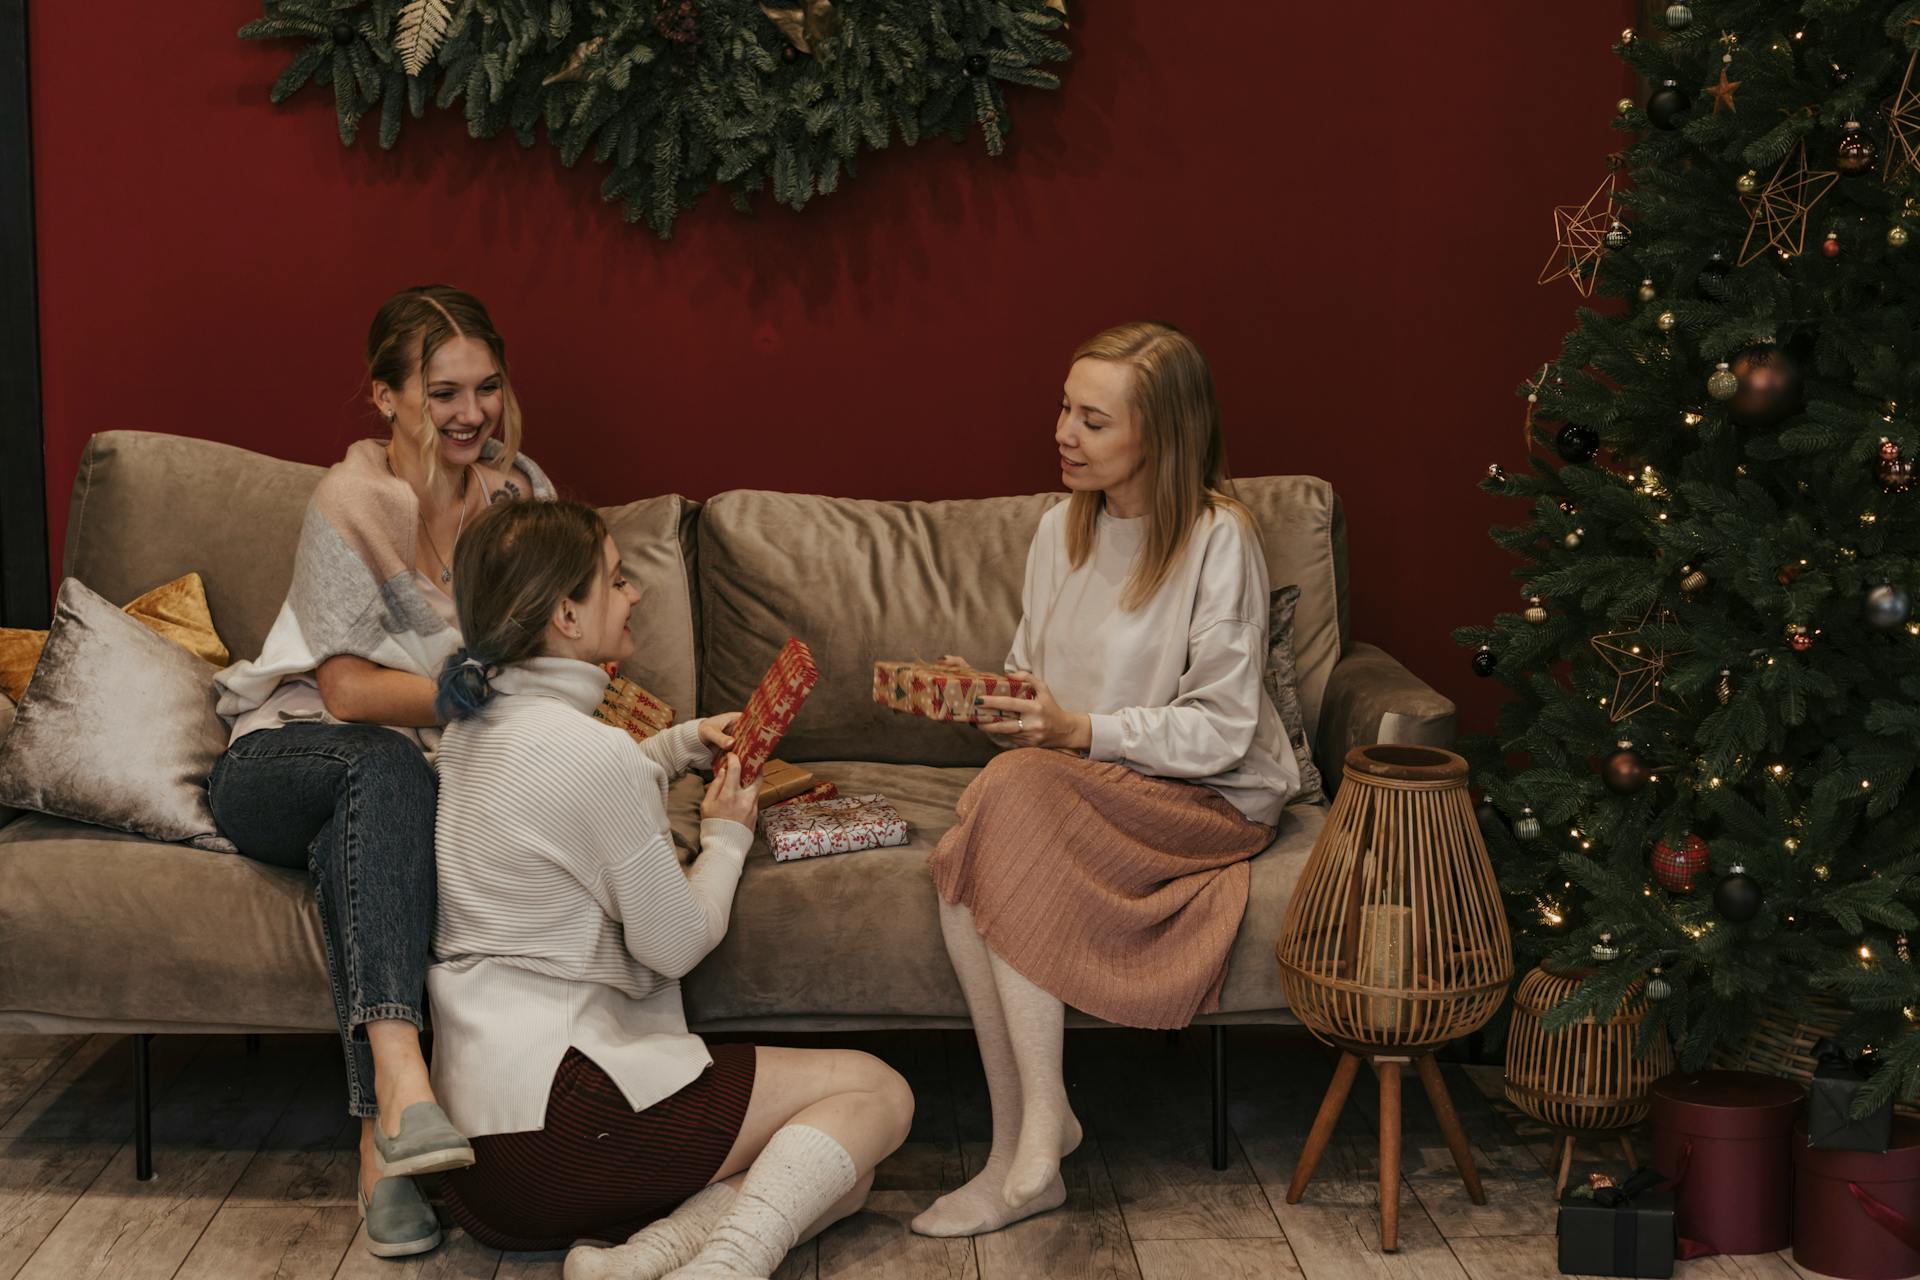 Eine Gruppe von Frauen, die Weihnachtsgeschenke austauschen | Quelle: Pexels